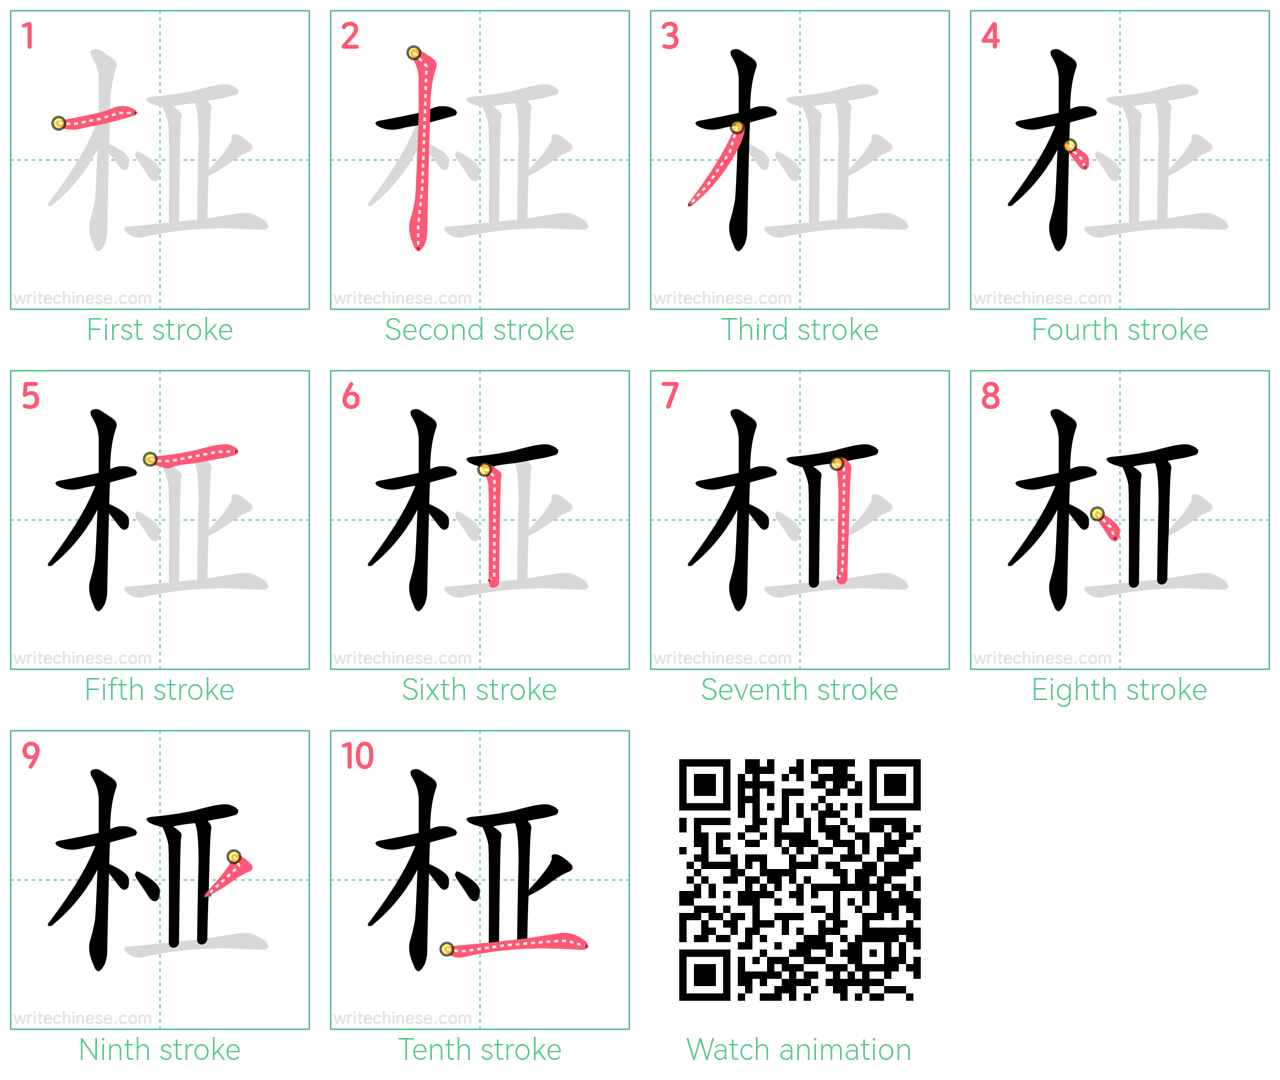 桠 step-by-step stroke order diagrams